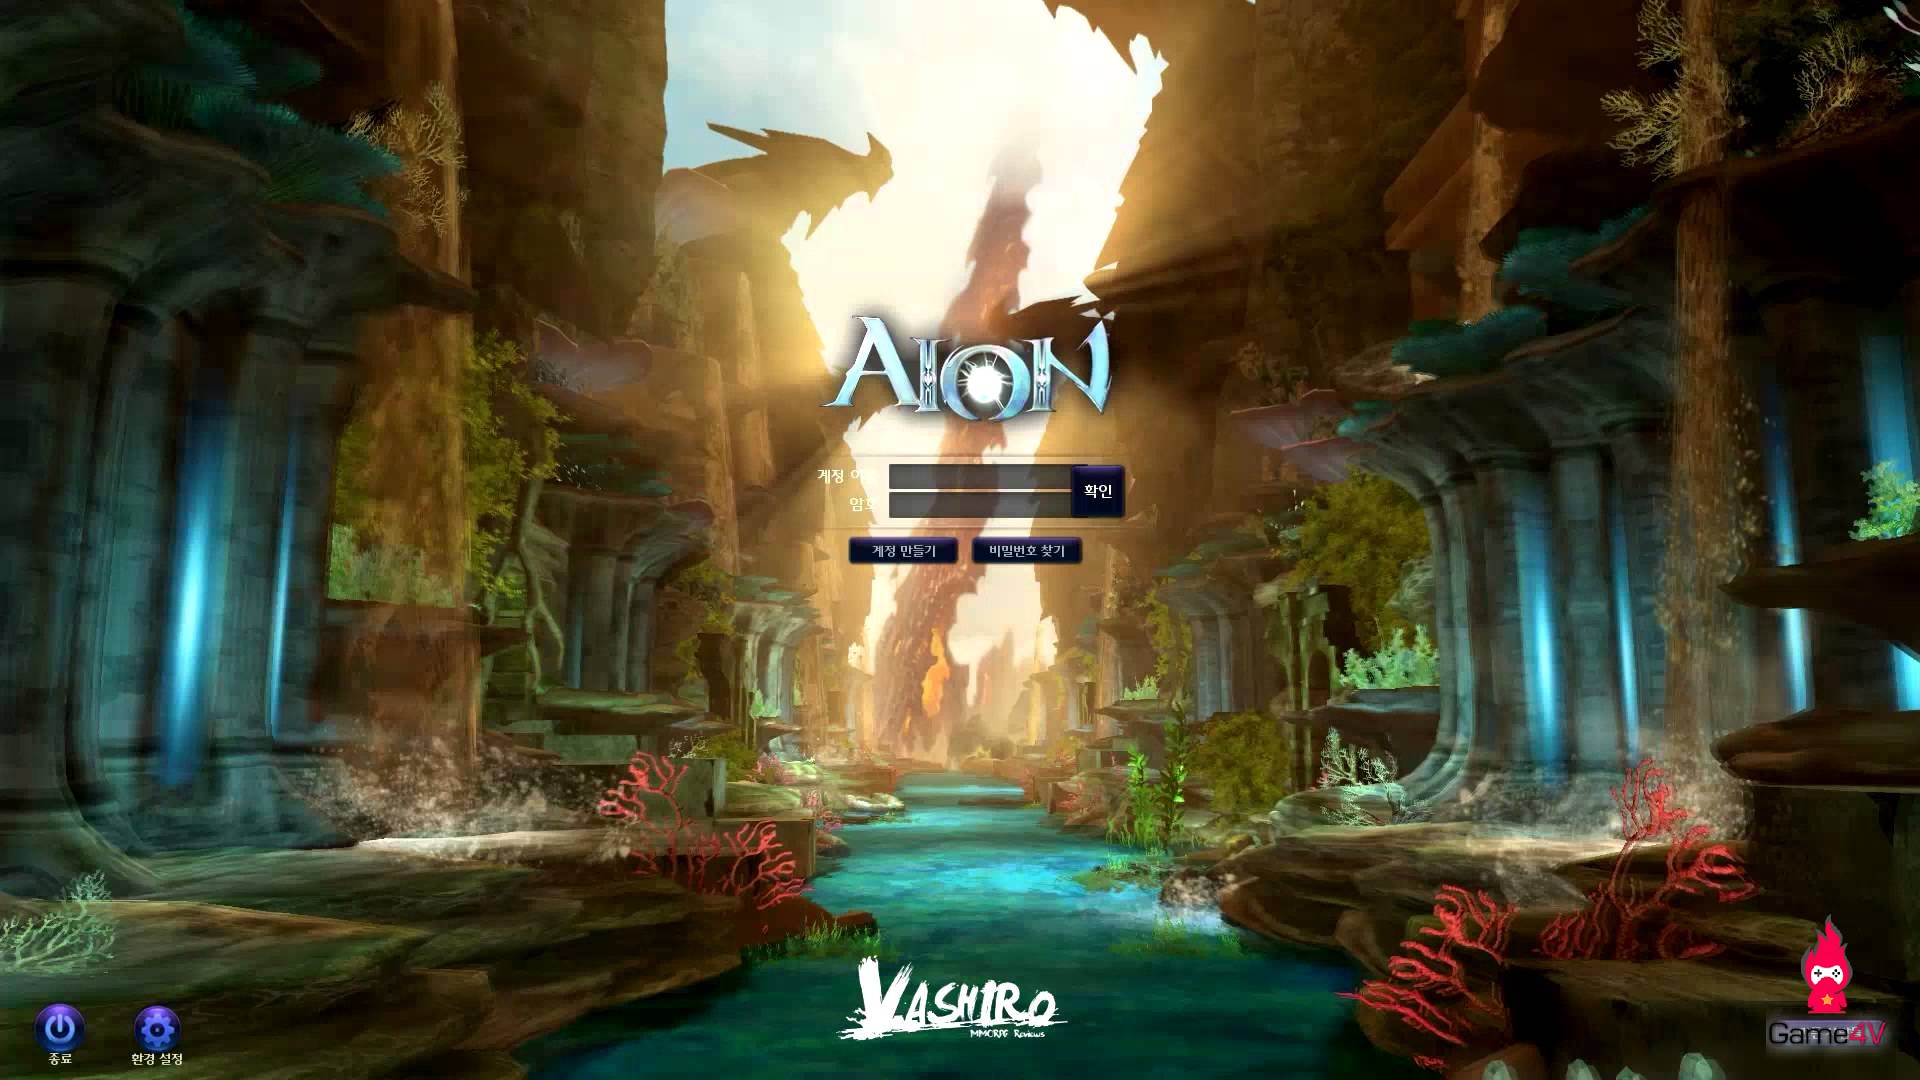 Aion bất ngờ có mặt trên Steam, thêm cơ hội cho game thủ Việt